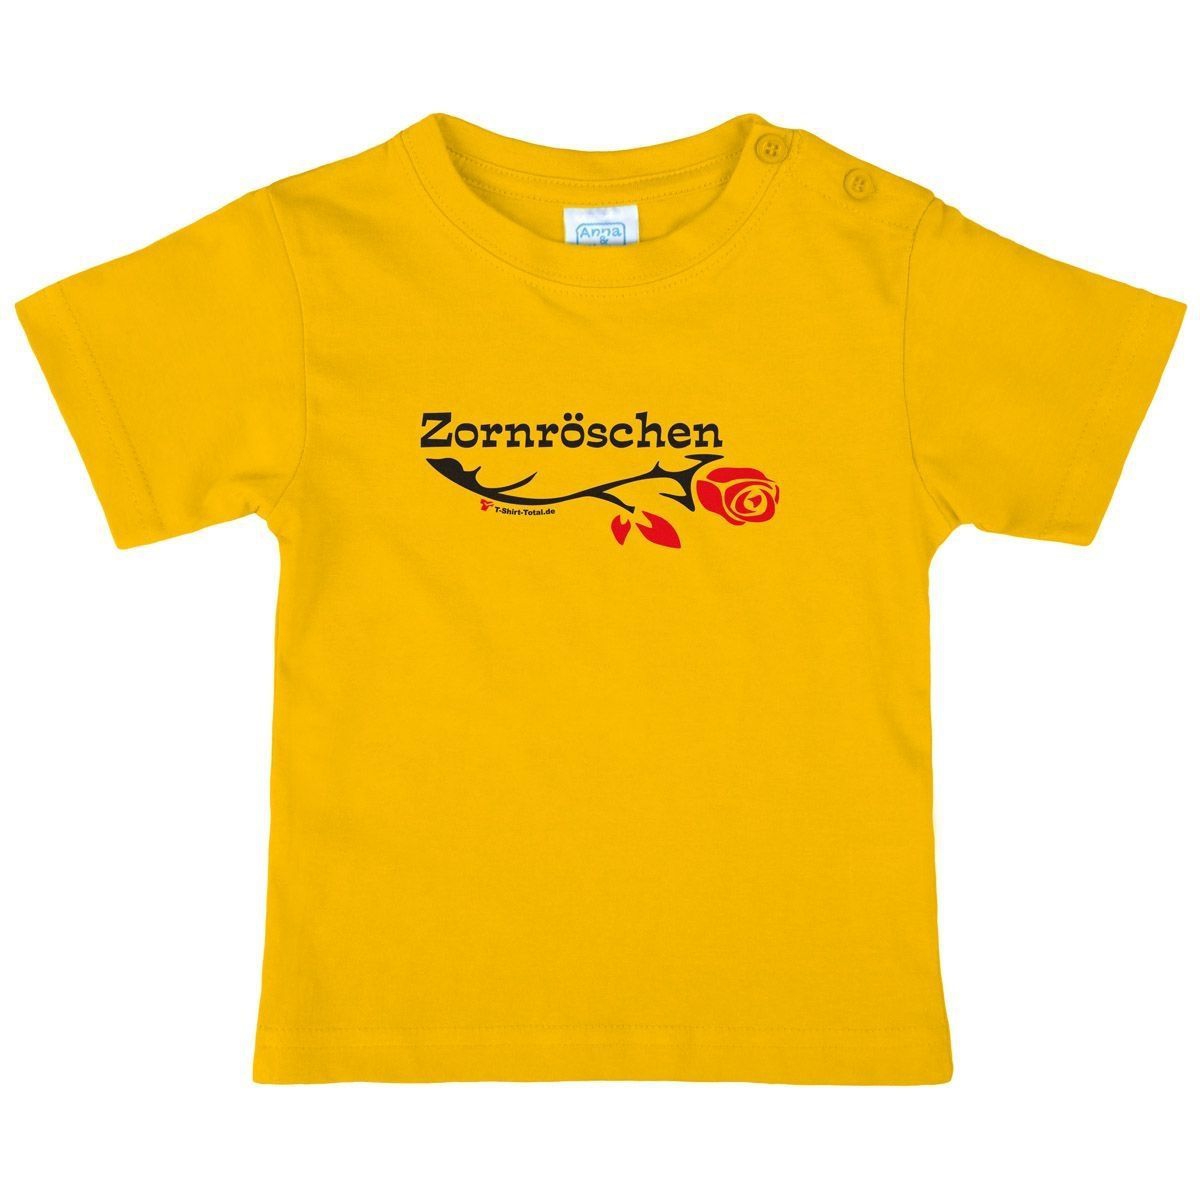 Zornröschen Kinder T-Shirt gelb 80 / 86